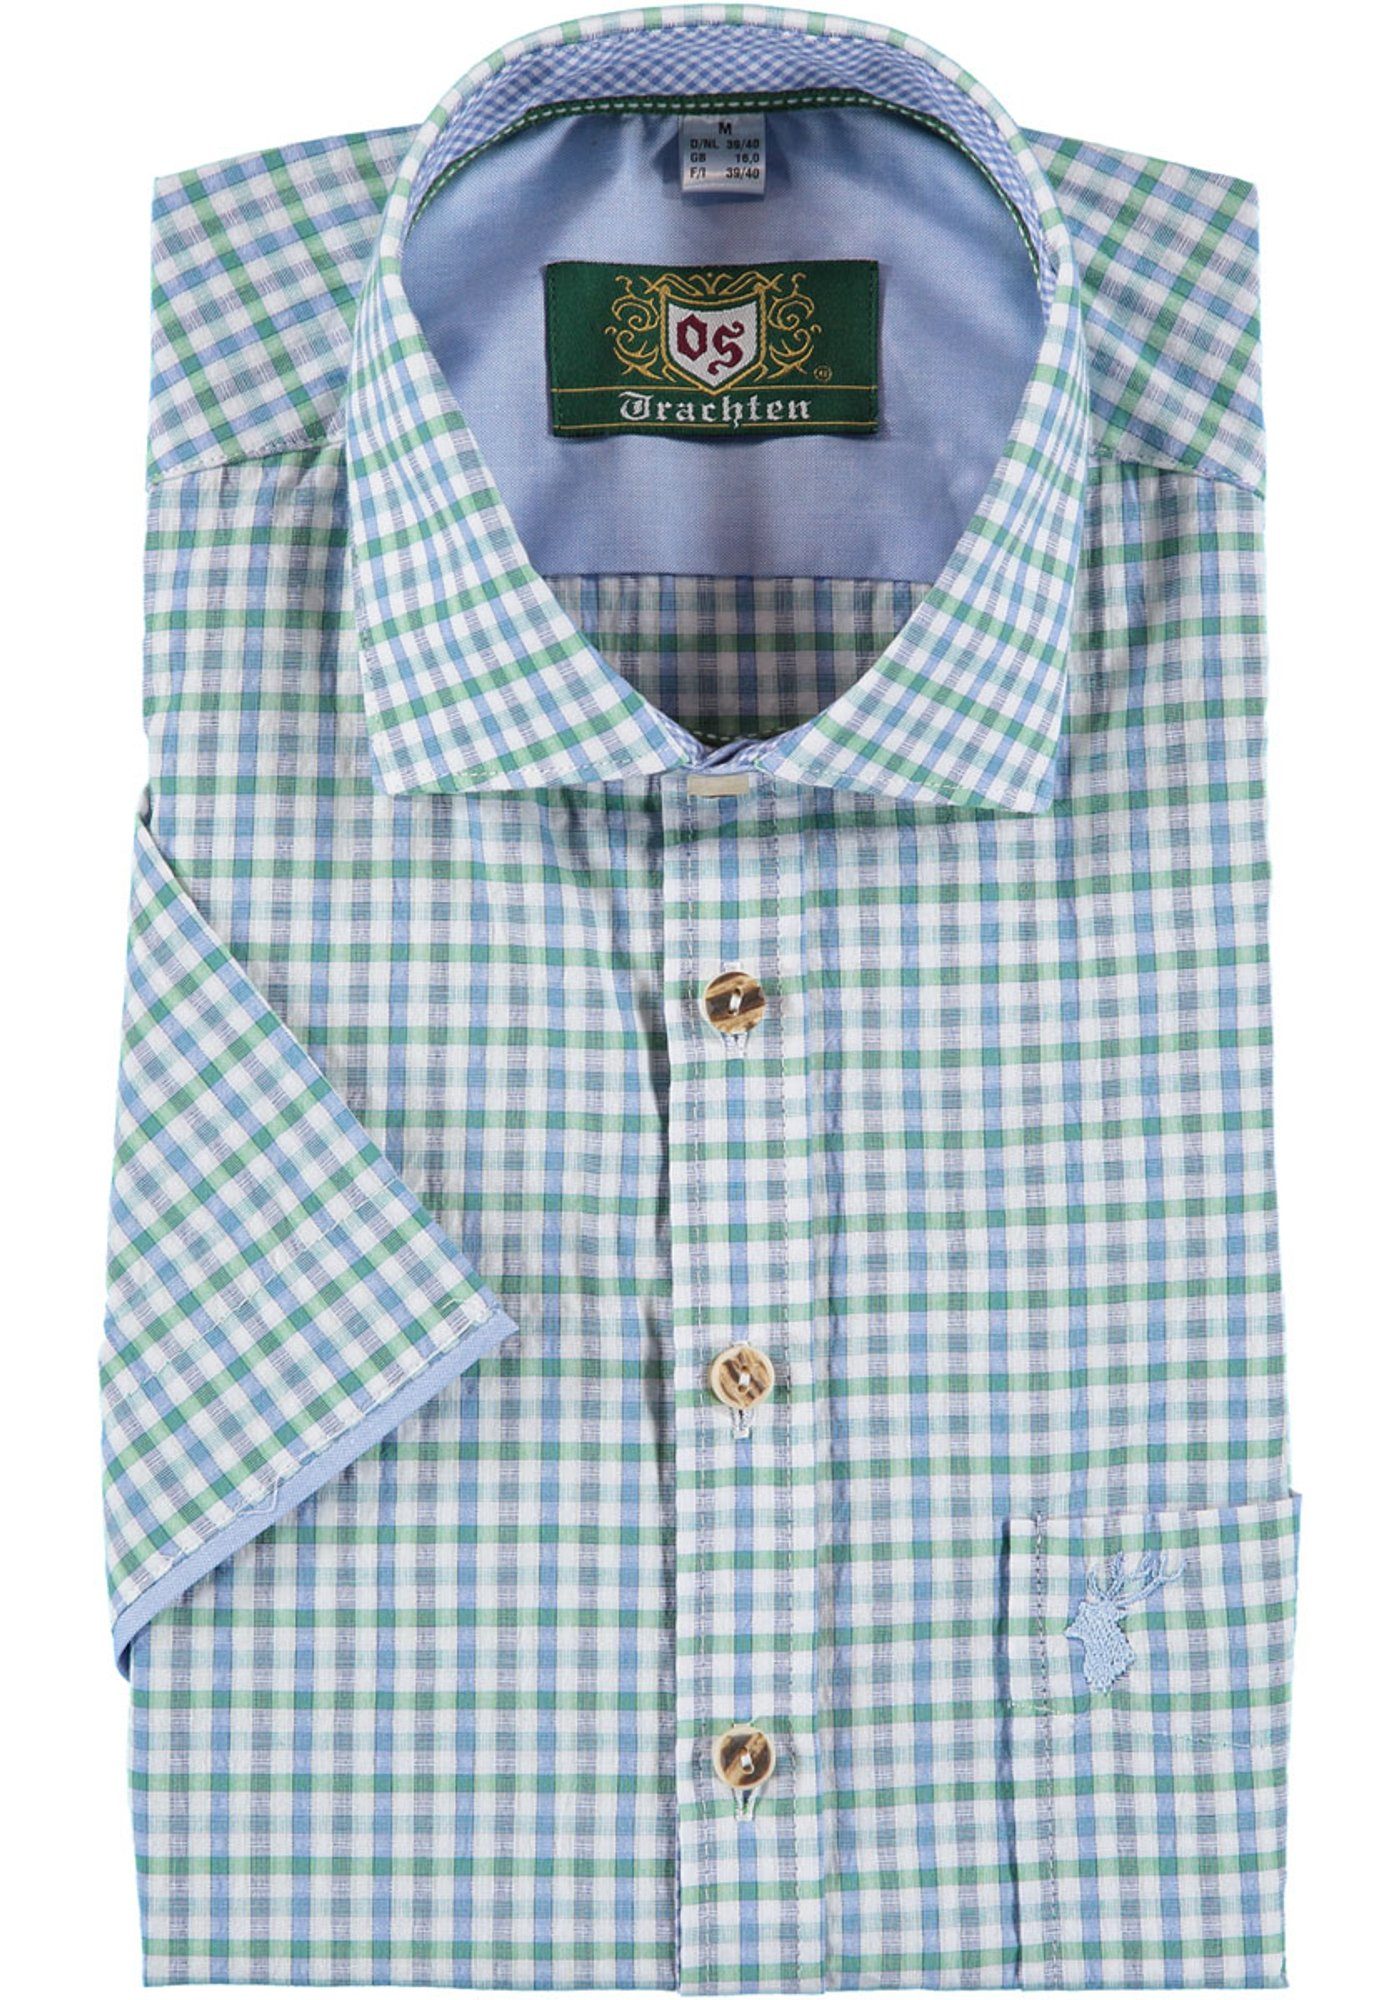 OS-Trachten Trachtenhemd Gafoo Herren Kurzarmhemd mit Hirsch-Stickerei auf der Brusttasche trachtengrün